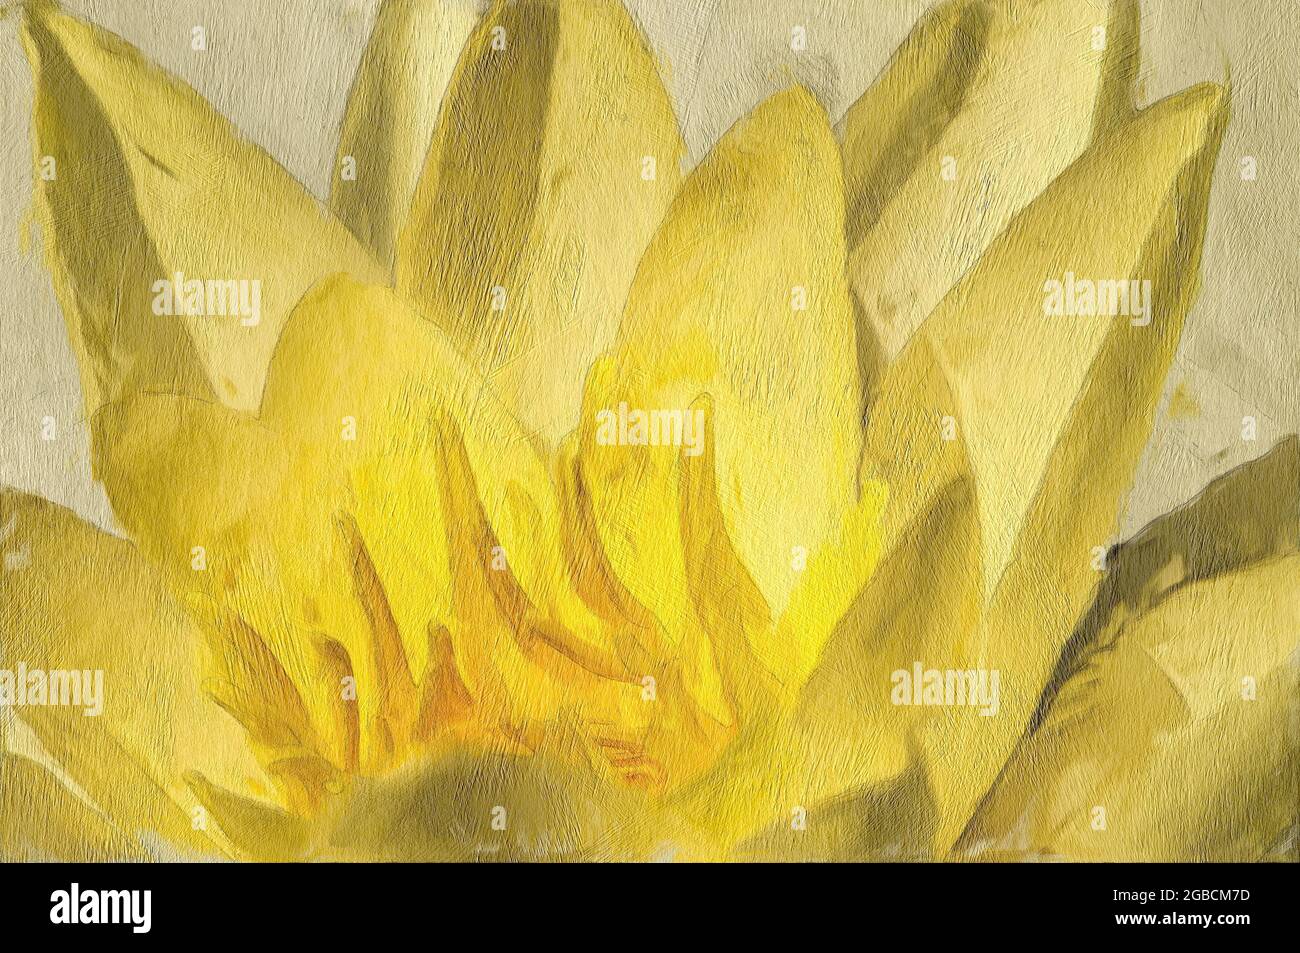 Effet de peinture vue rapprochée d'un nénuphar jaune avec une apparence peinte et texturée Banque D'Images